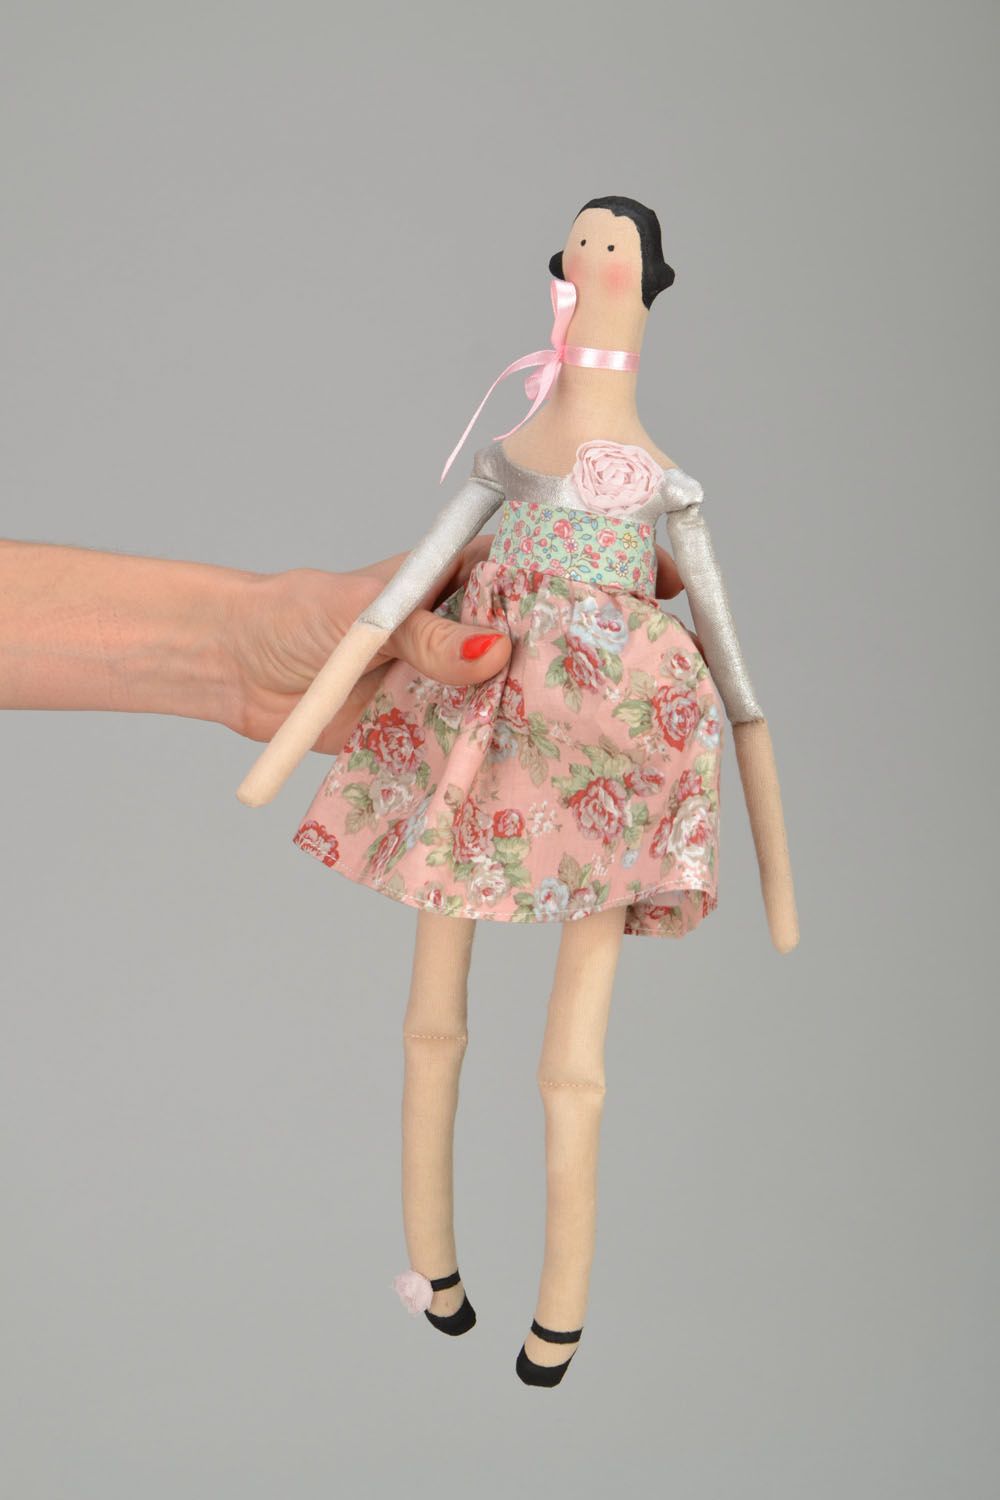 Muñeca artesanal en el vestido foto 2